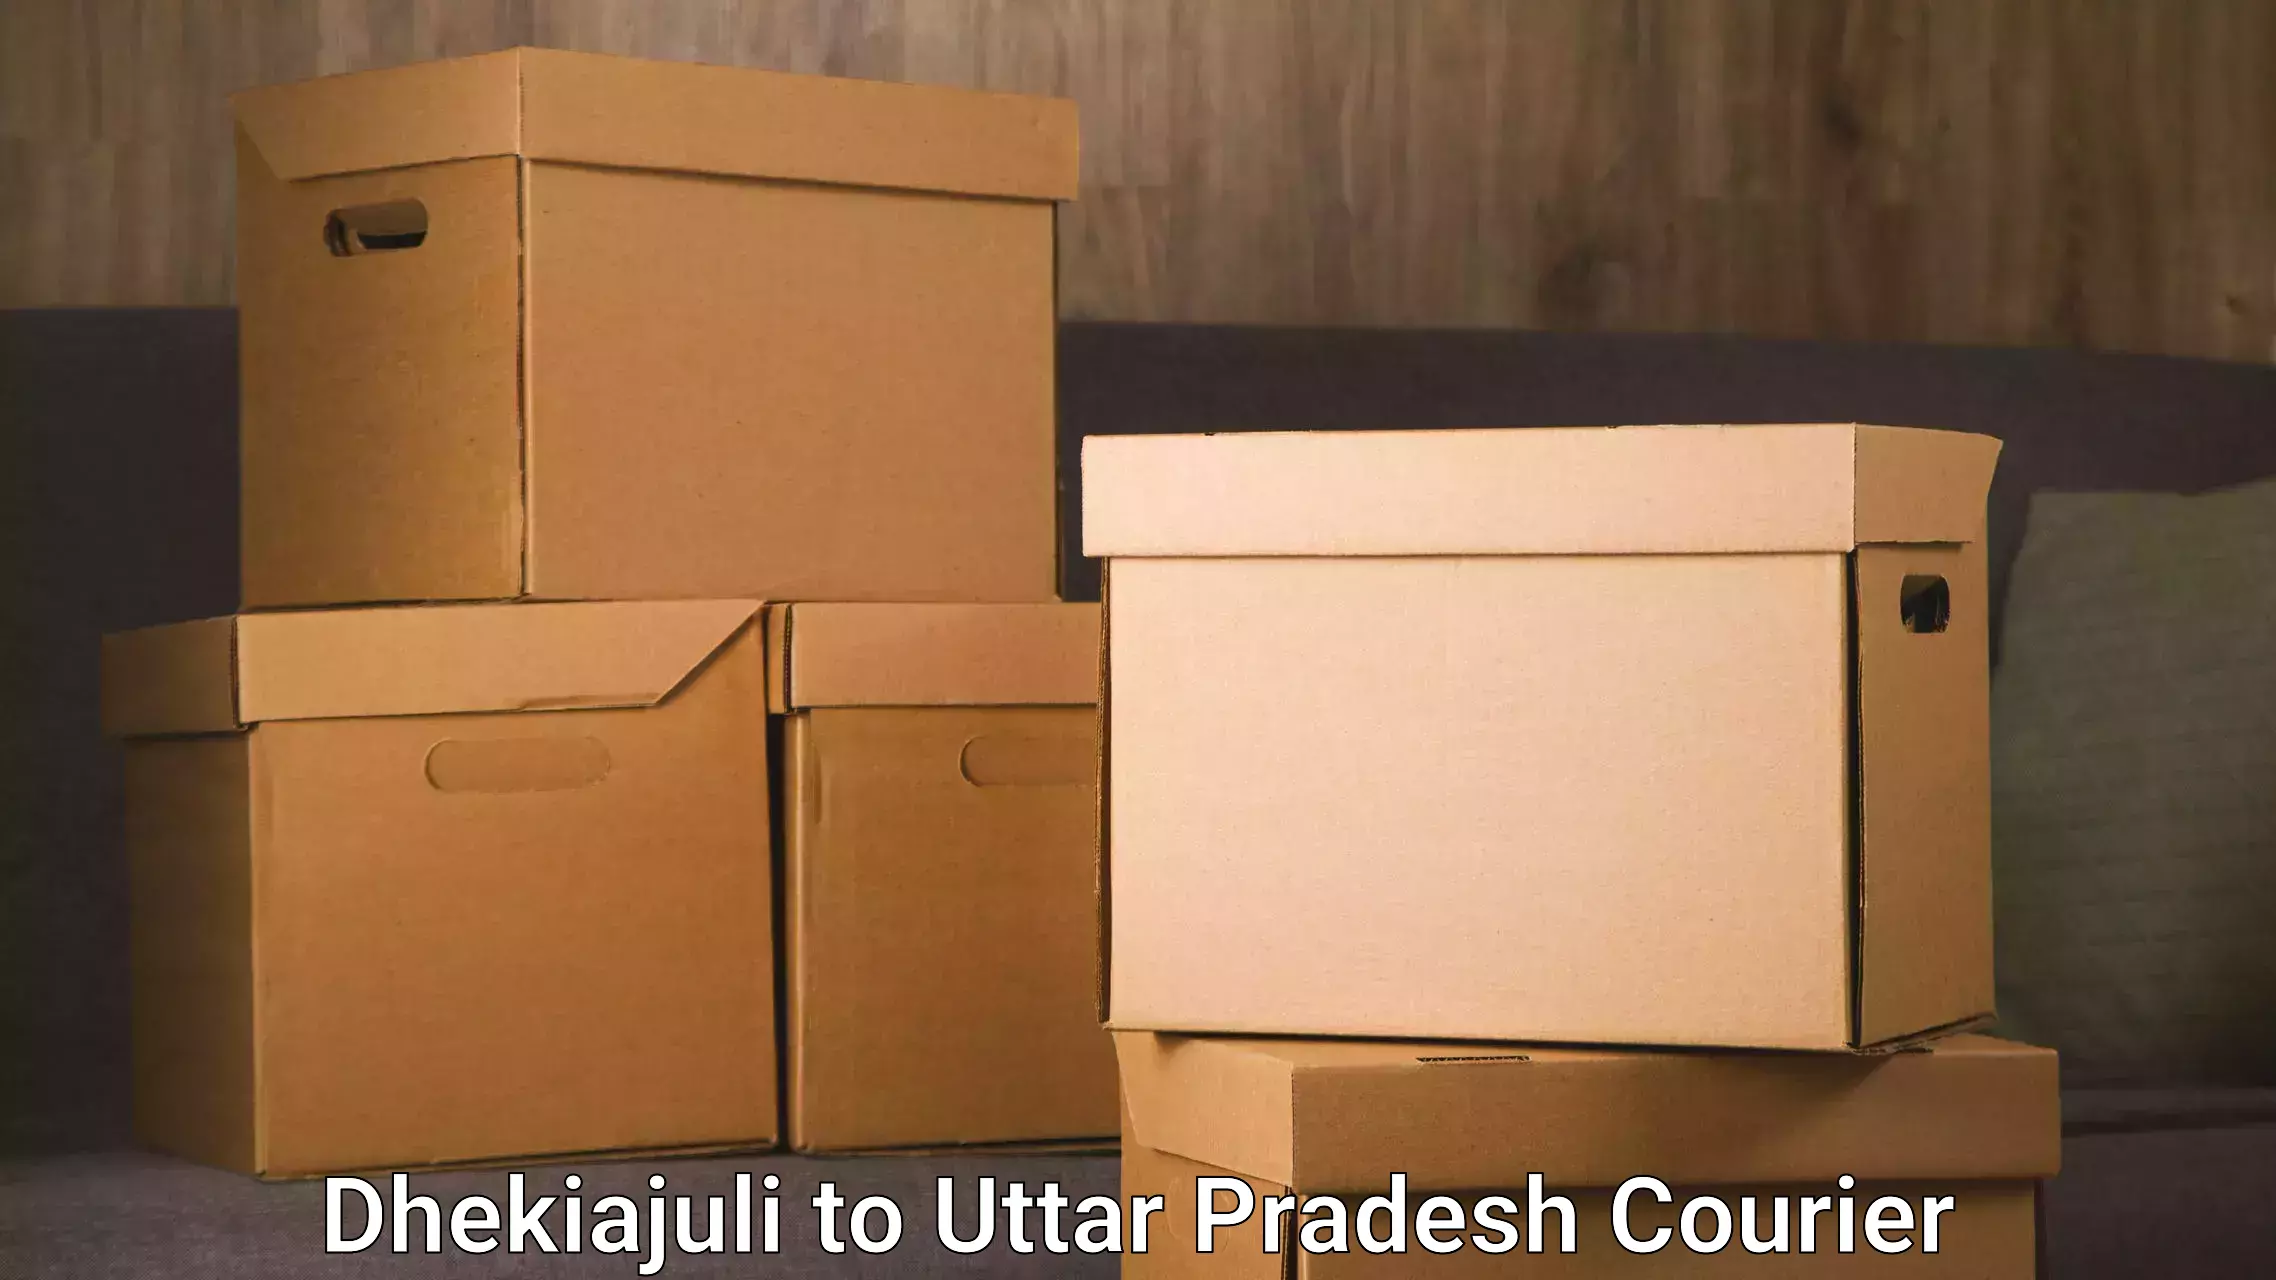 Full-service courier options Dhekiajuli to Bulandshahr